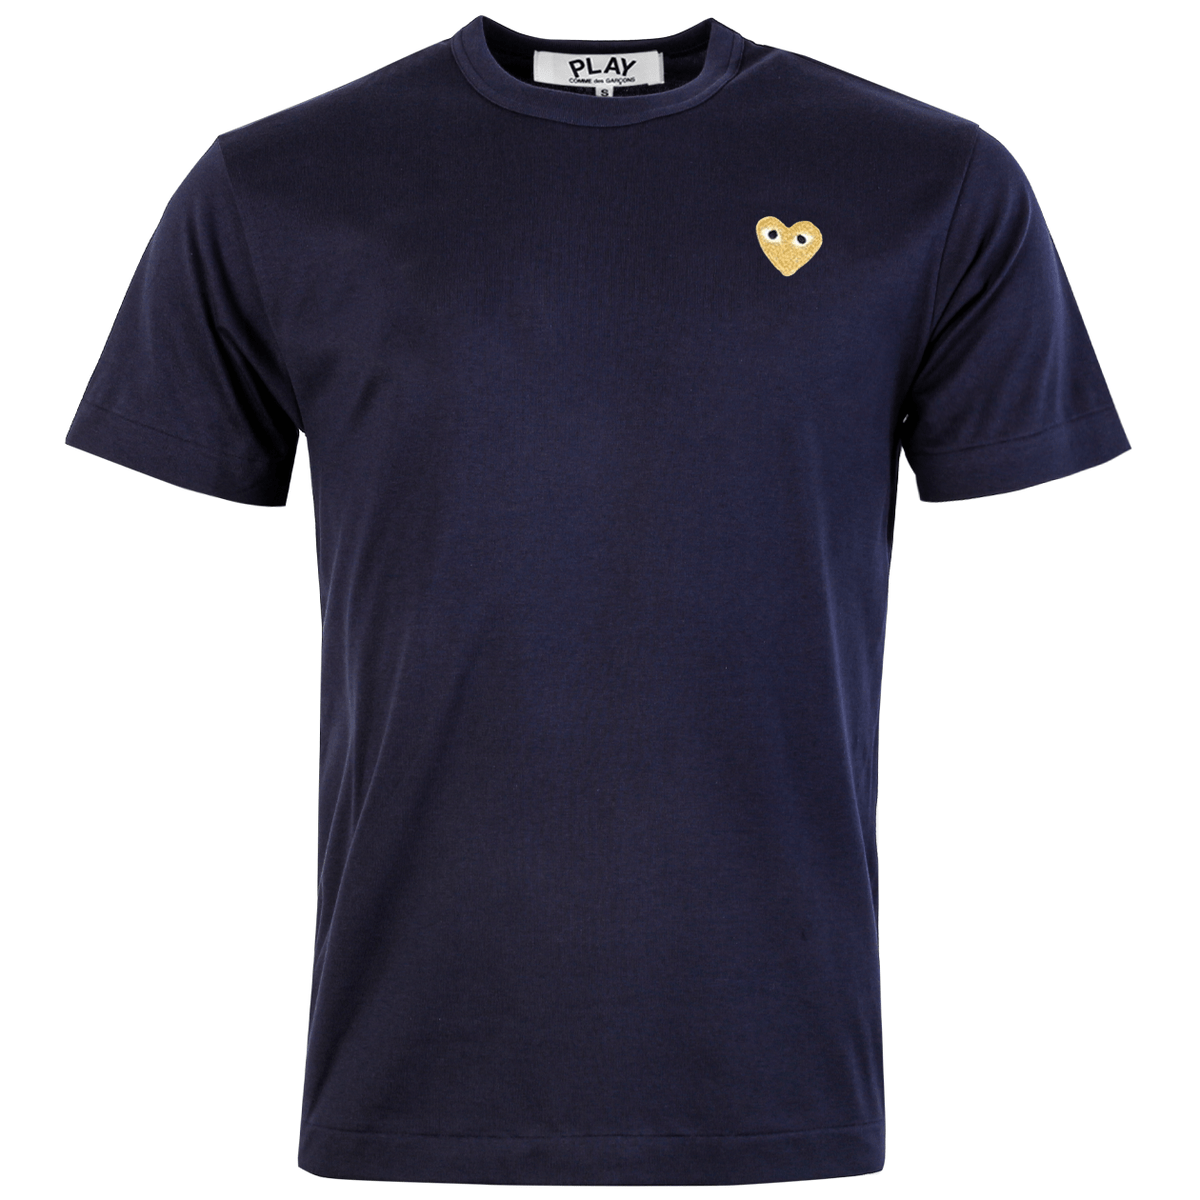 T216 Gold Heart T-shirt Navy S Navy